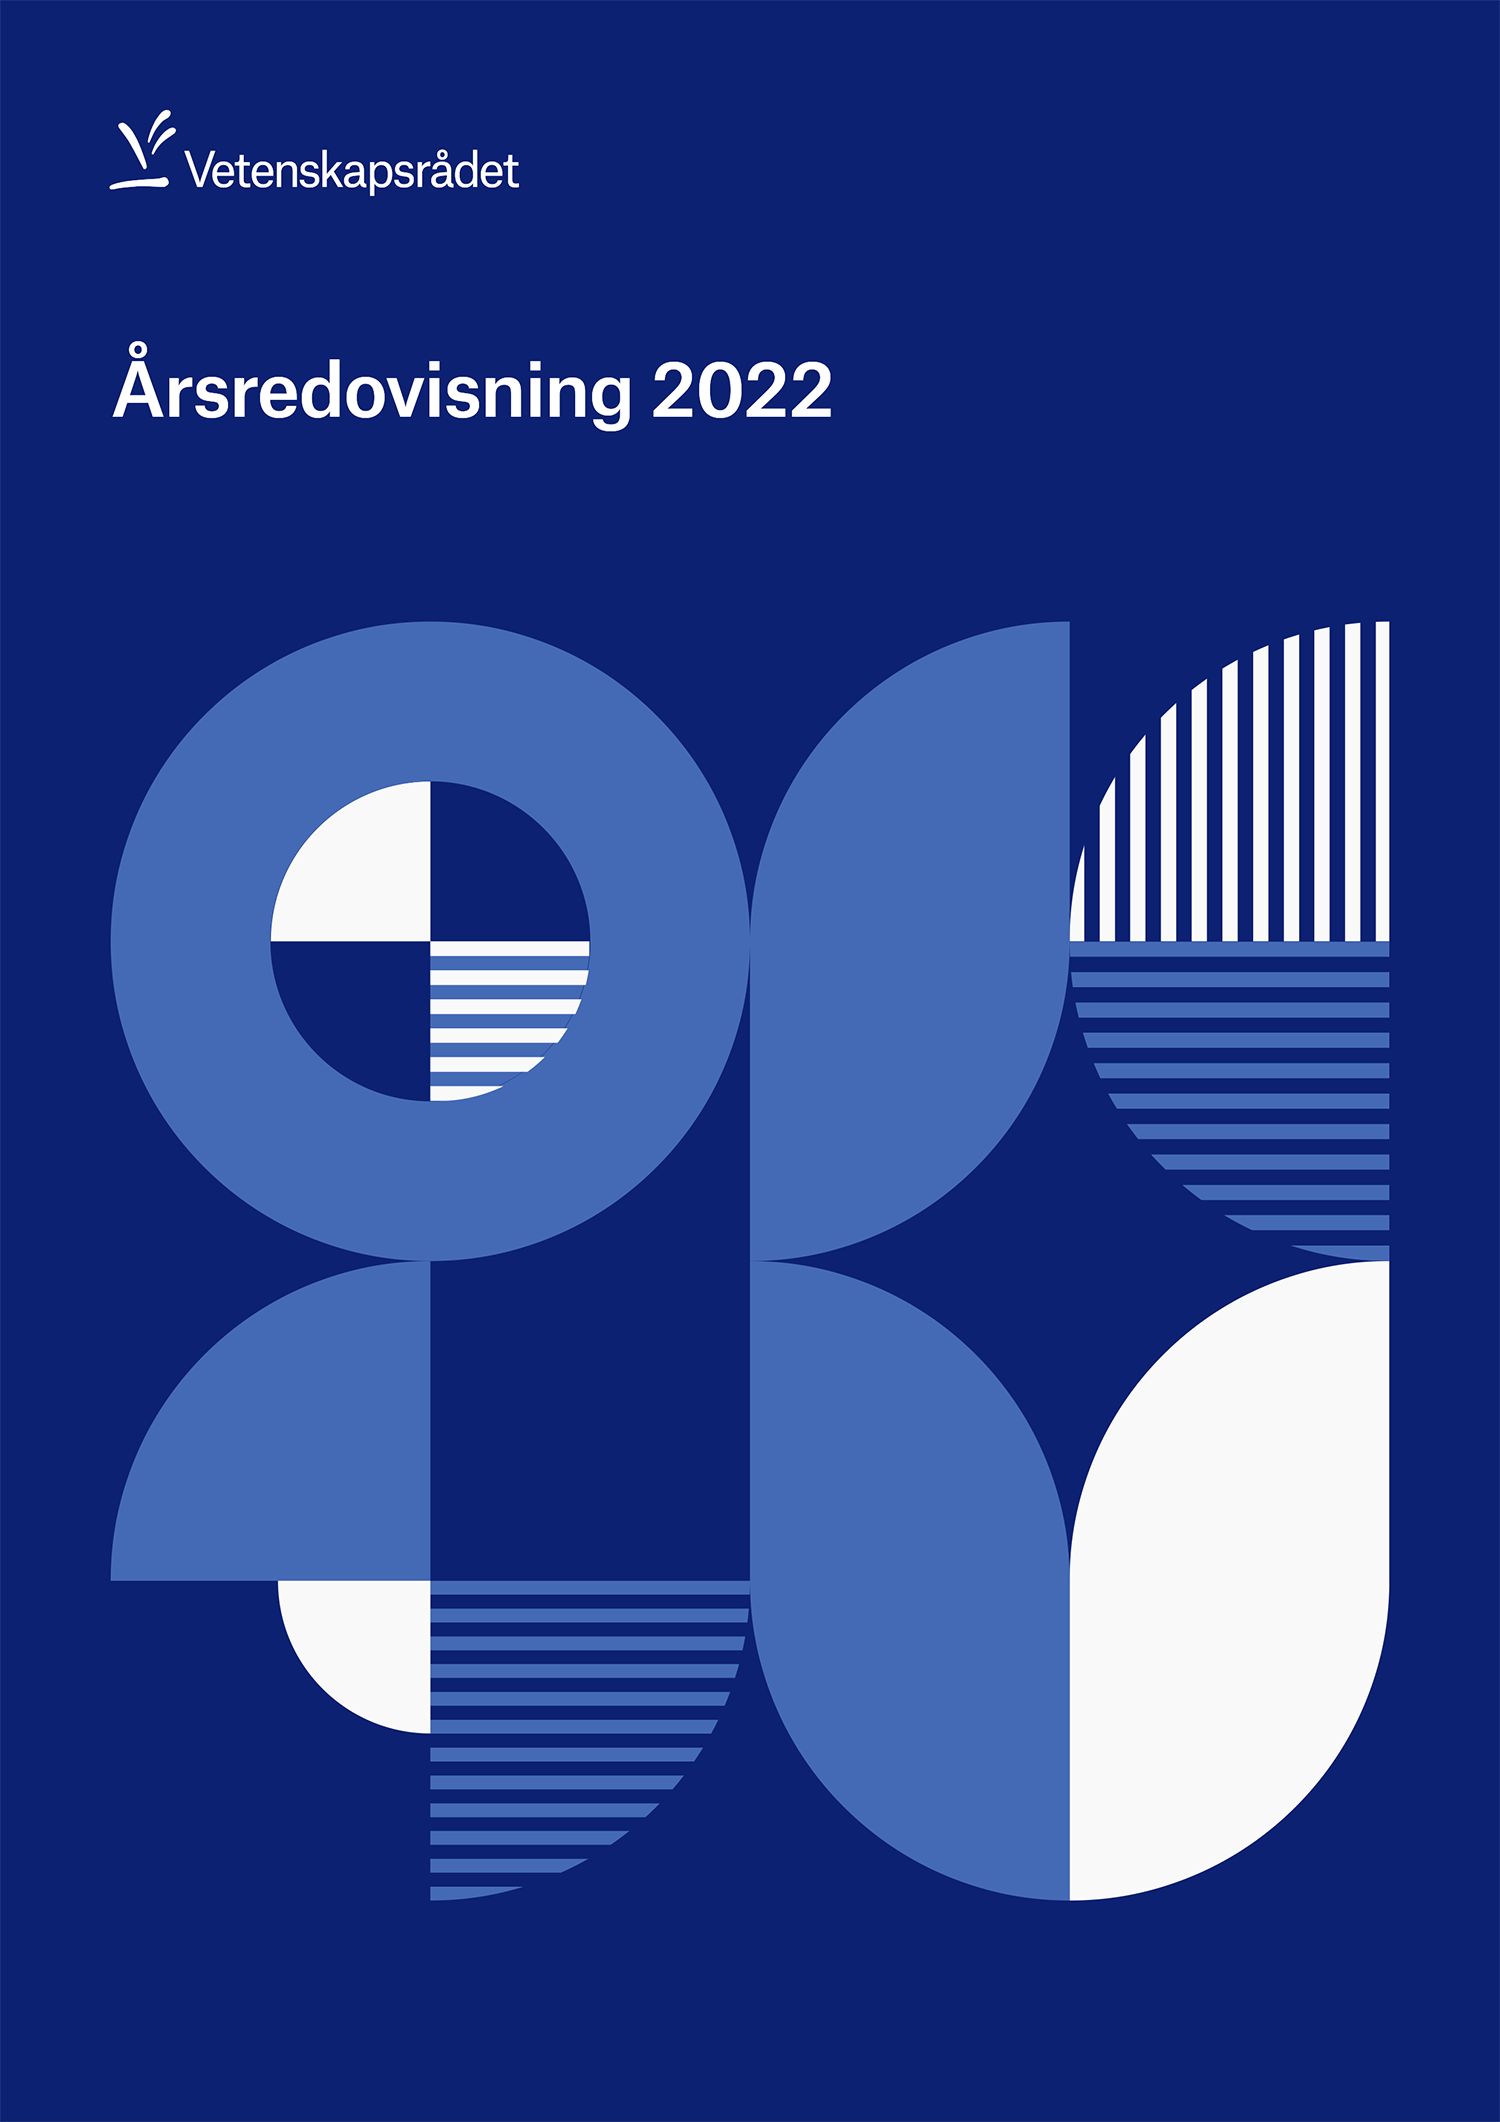 Bild på rapportomslag med titeln Årsredovisning 2022.